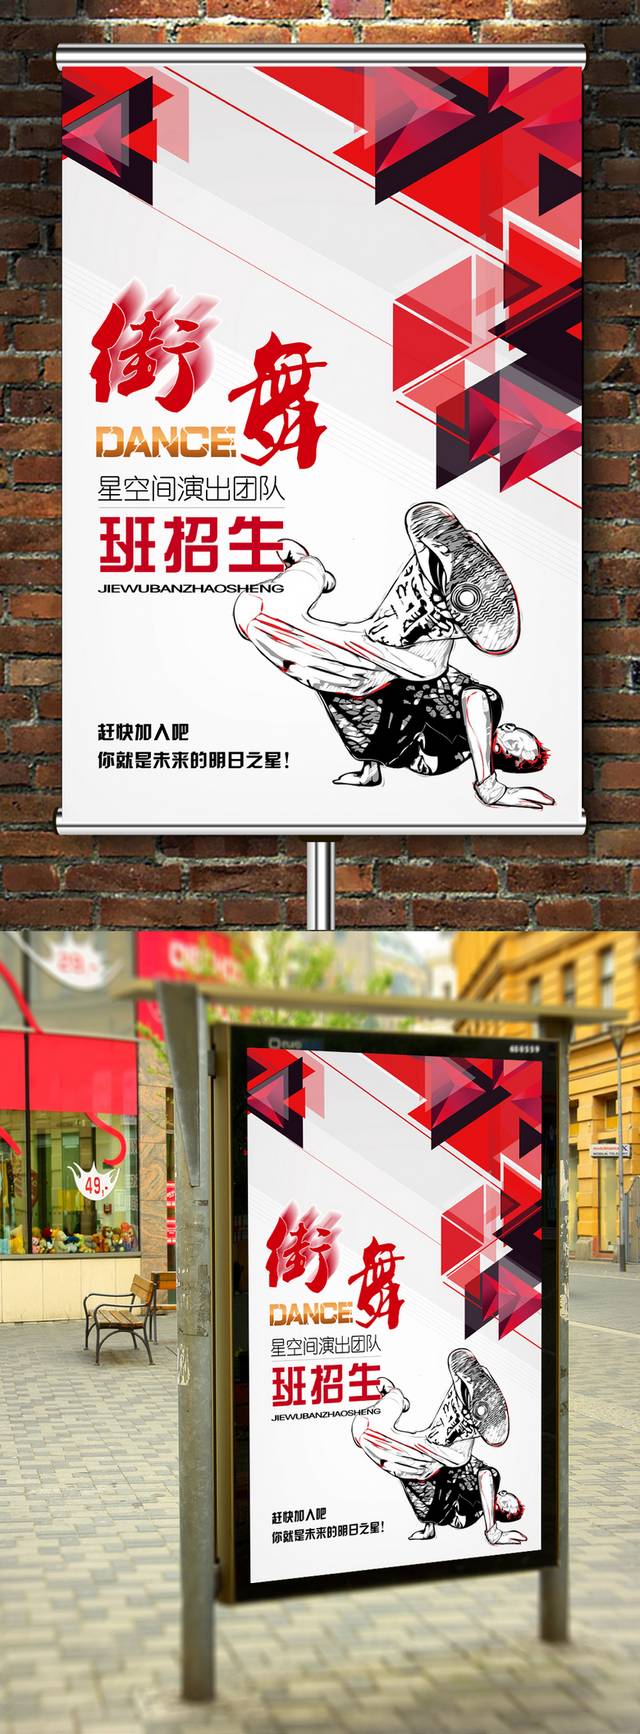 街舞班招生海报宣传设计